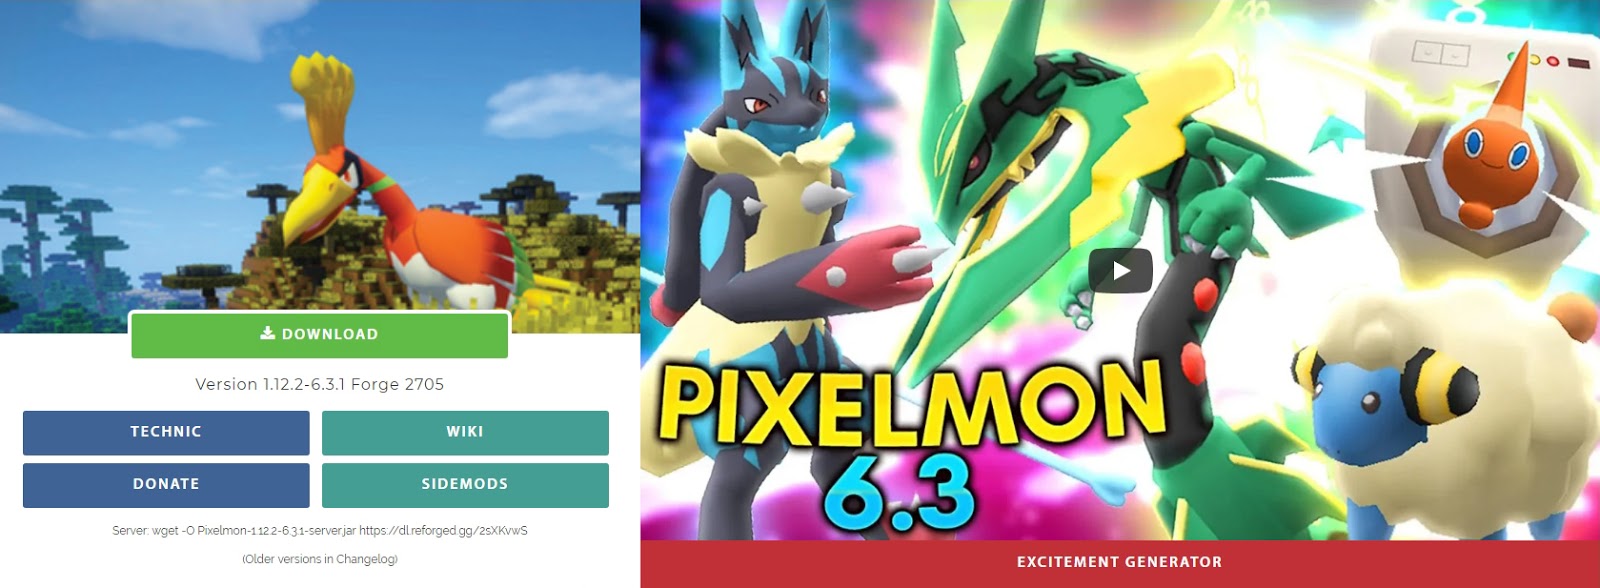 Pokemon Palkia – Pixelmon Reforged Wiki